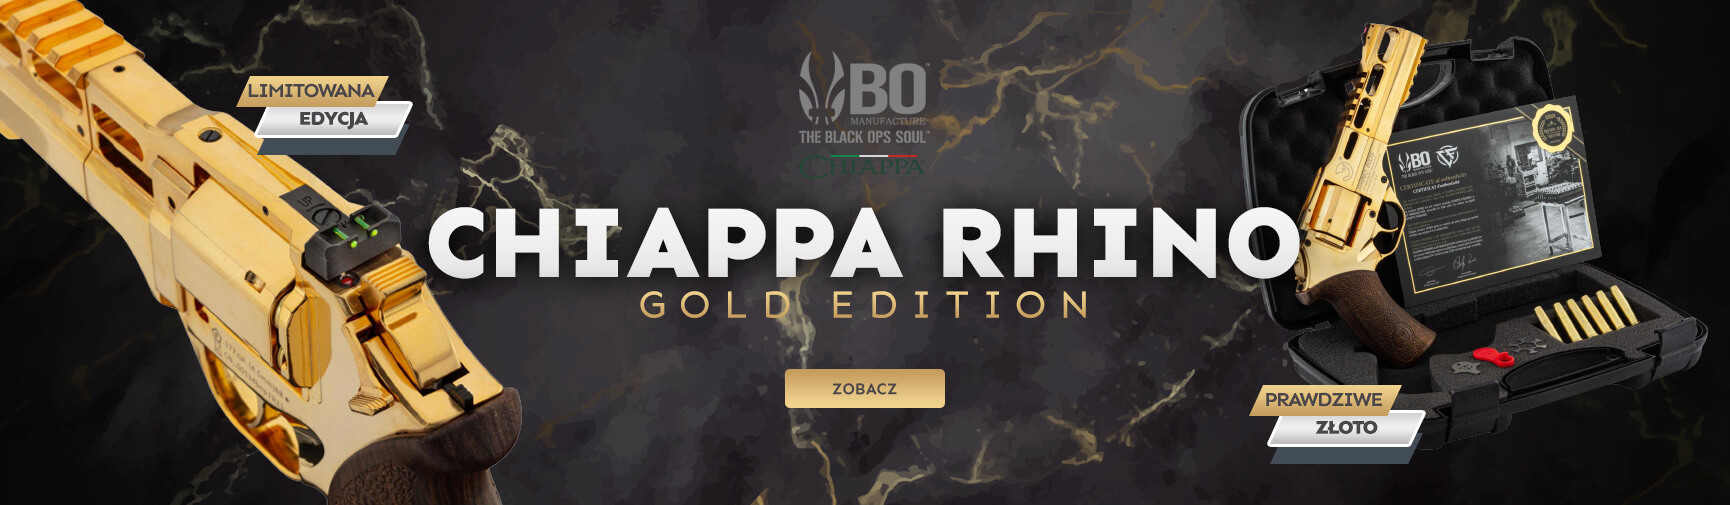 Chiappa Rhino Gold Limitowana Edycja